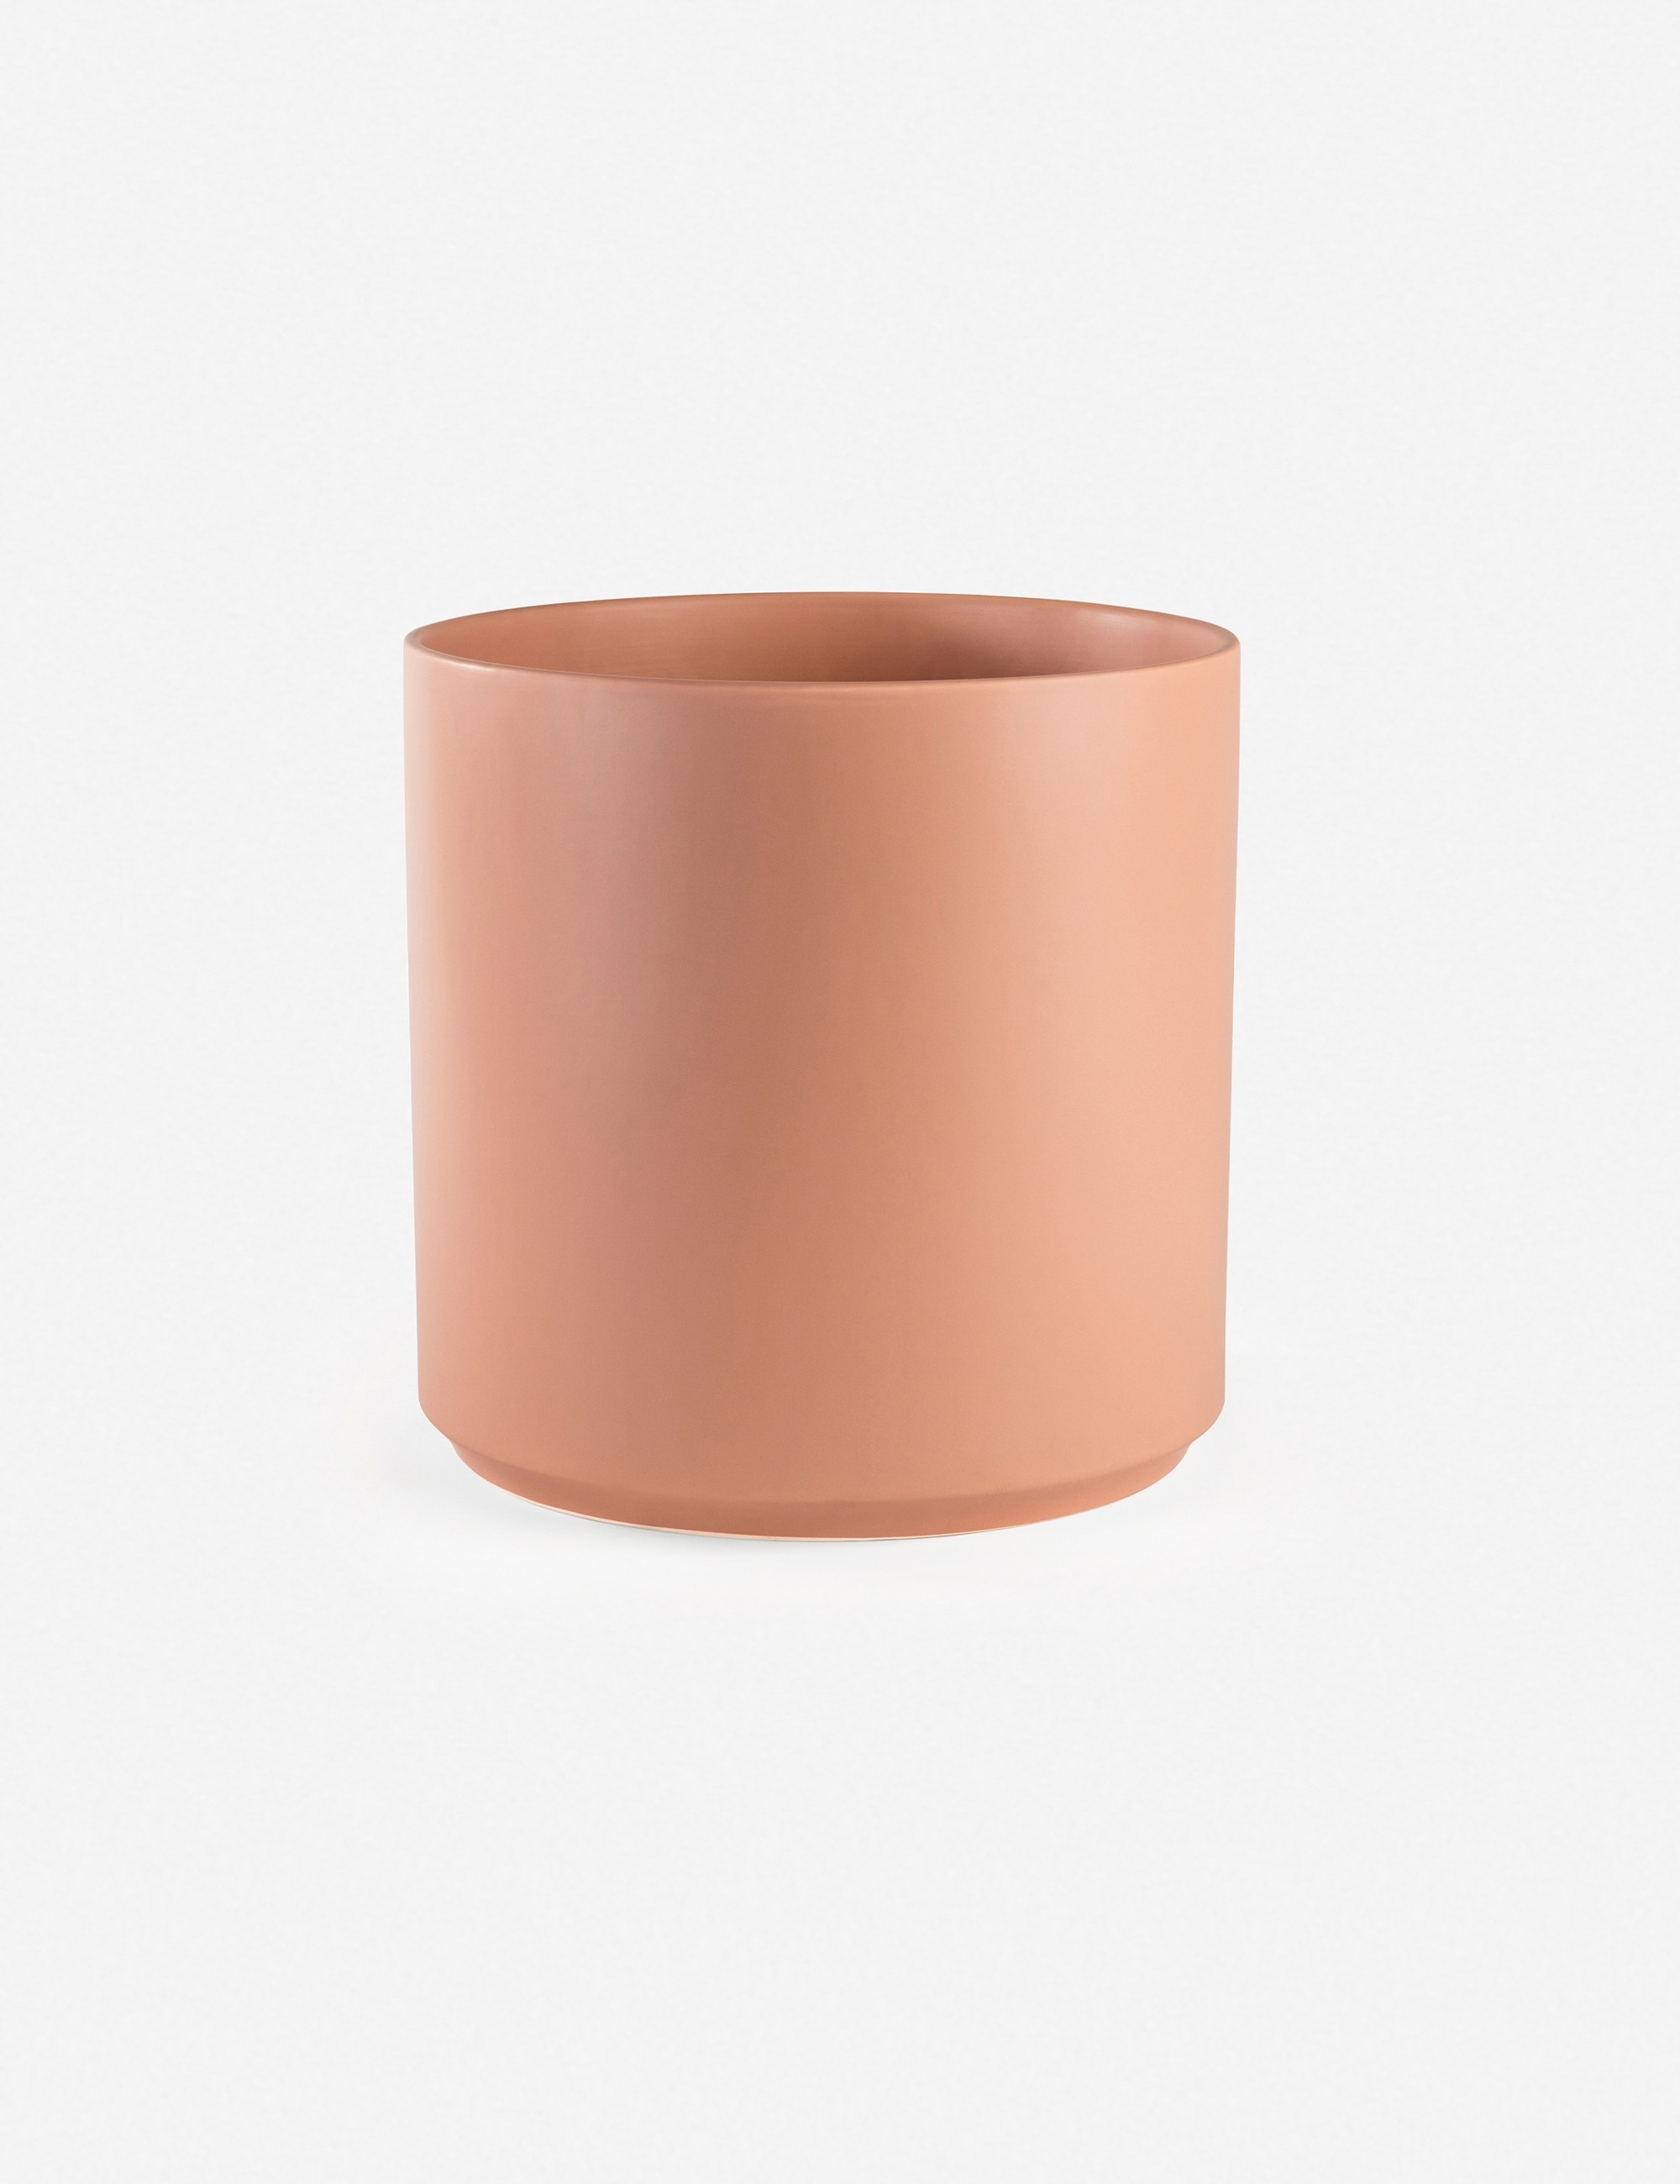 LBE Design Ceramic Planter, Peach 18"Dia x 20"H - with stand - Image 5